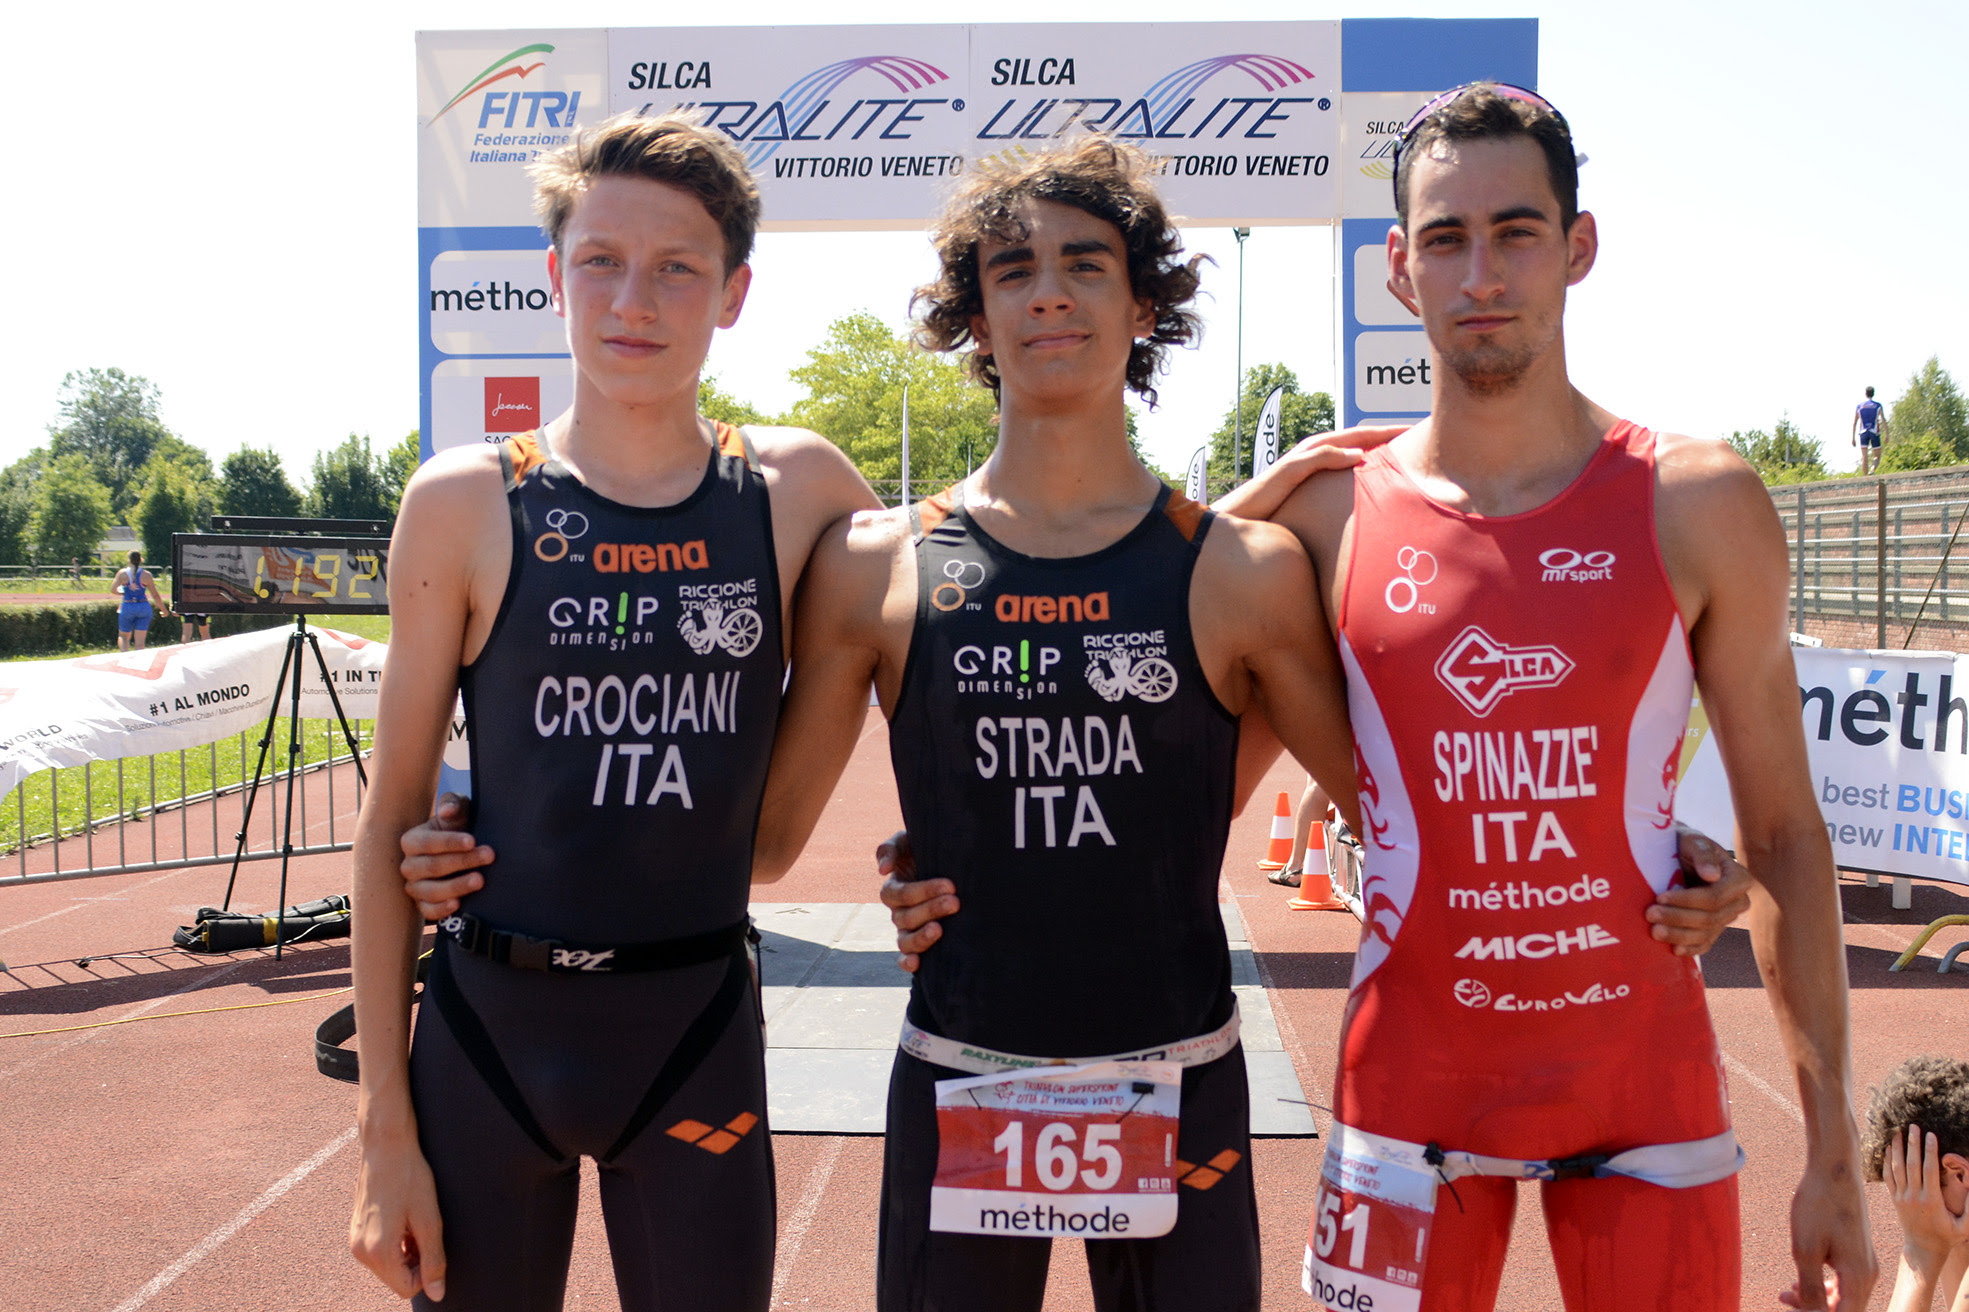 Giovani in luce al 6° Triathlon Super Sprint di Vittorio Veneto (TV) firmato Silca Ultralite